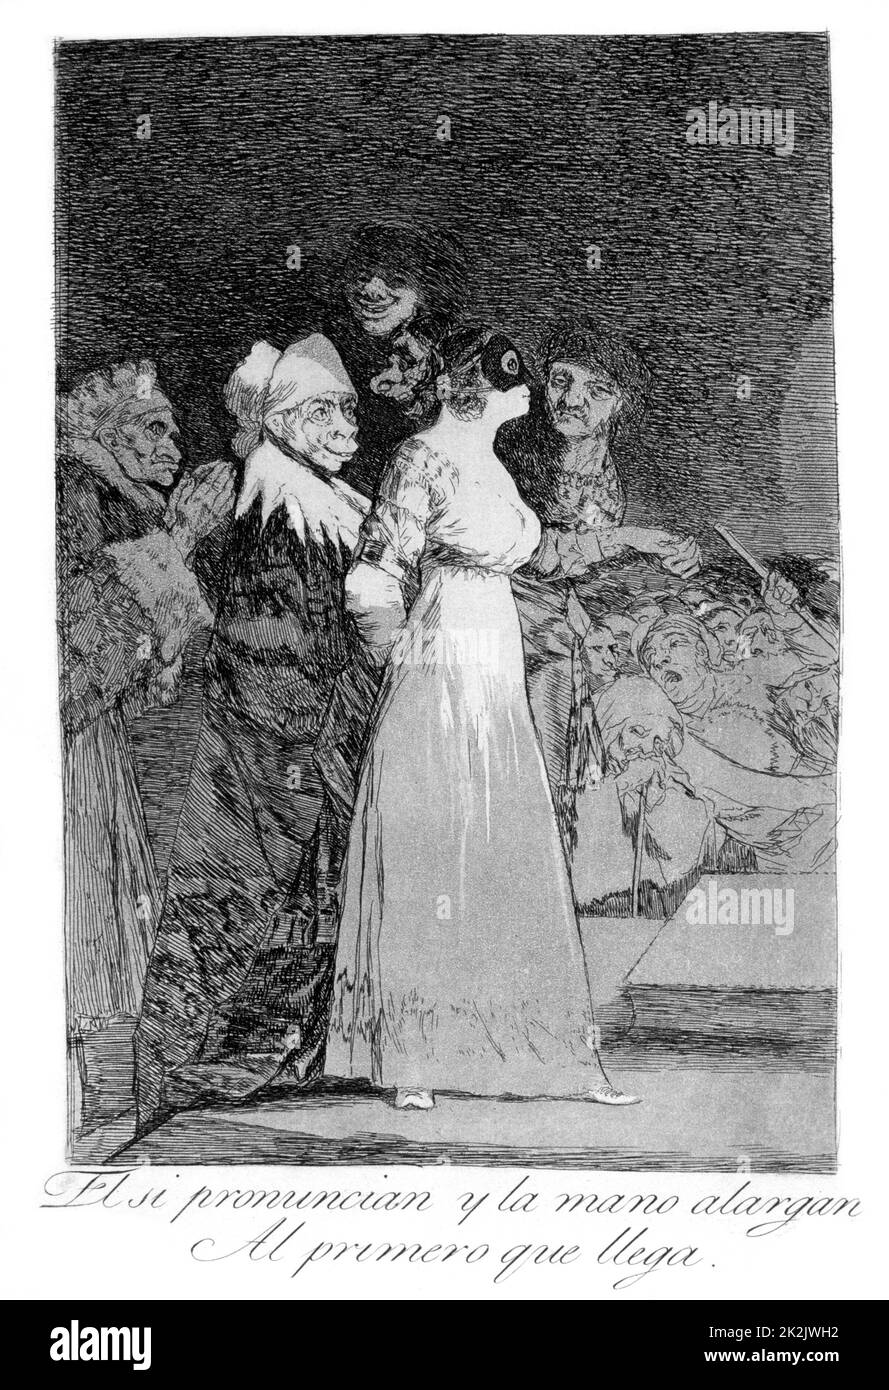 Ils disent oui et donnent leur main au premier comer', 1799. Assiette 2 de 'Los caprichos'. Par Francisco Jose de Lucientes y Goya Banque D'Images